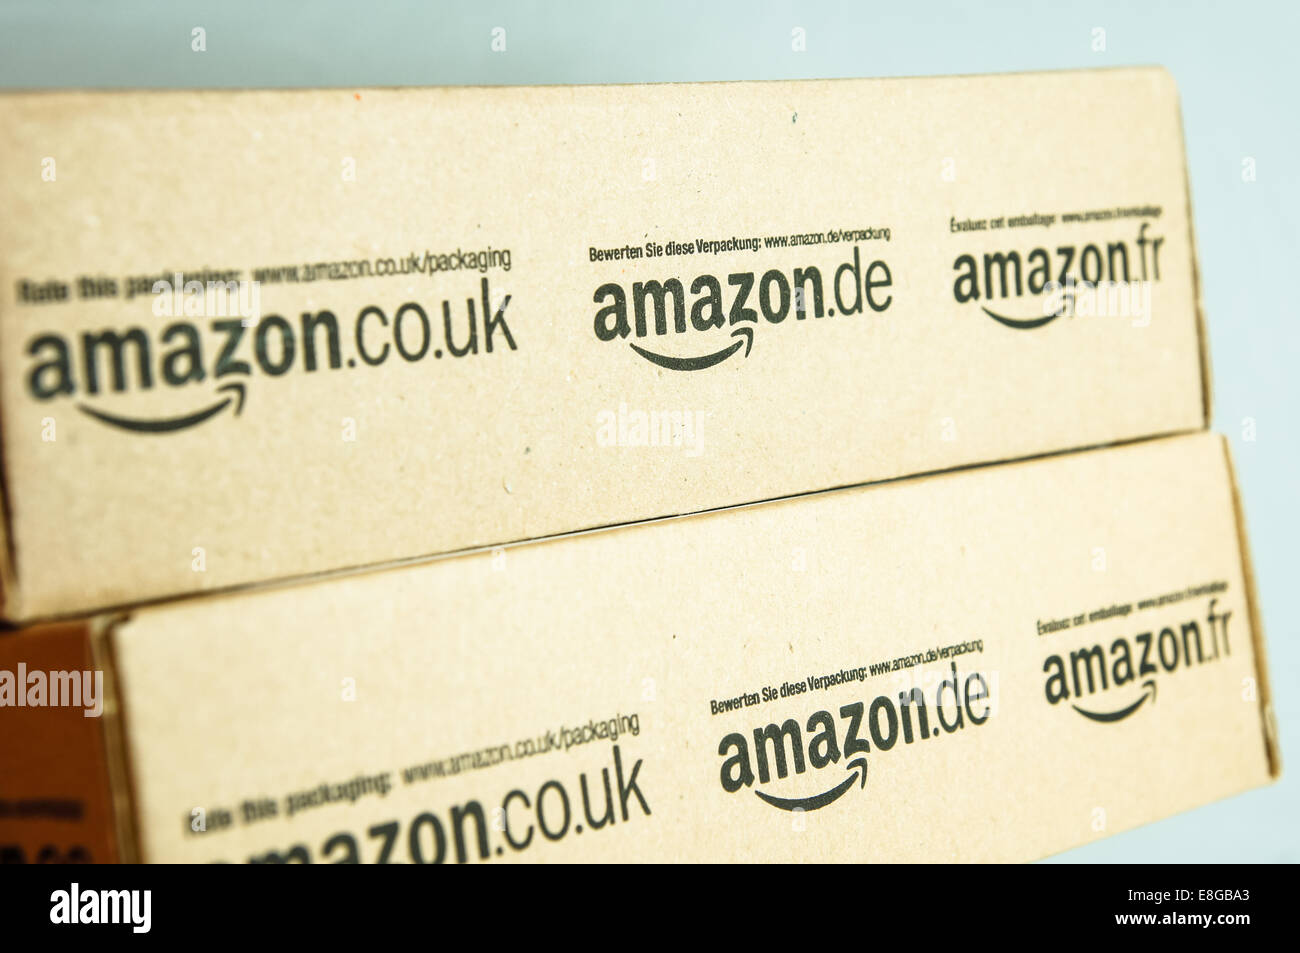 Amazon logo logos on boxes, amazon boxes Stock Photo